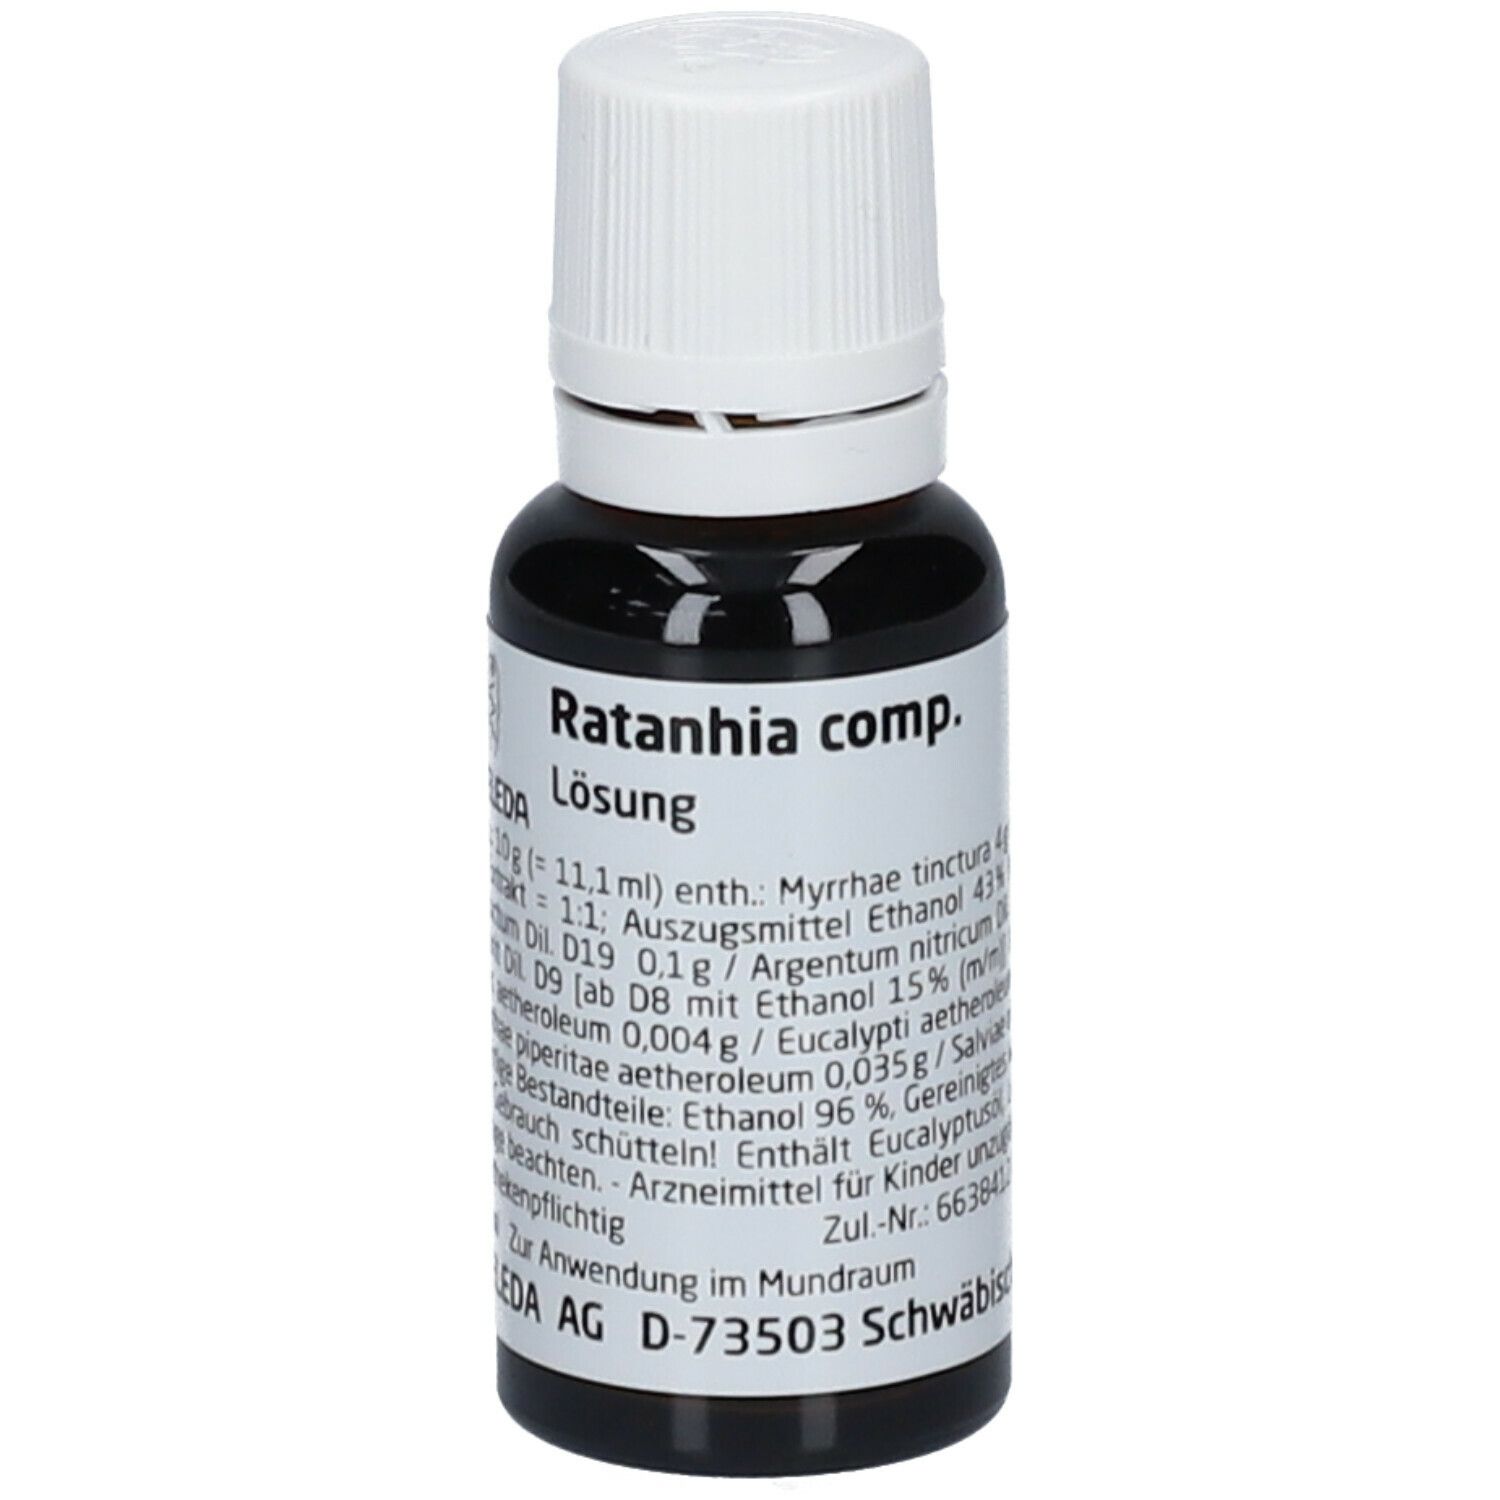 Ratanhia comp.